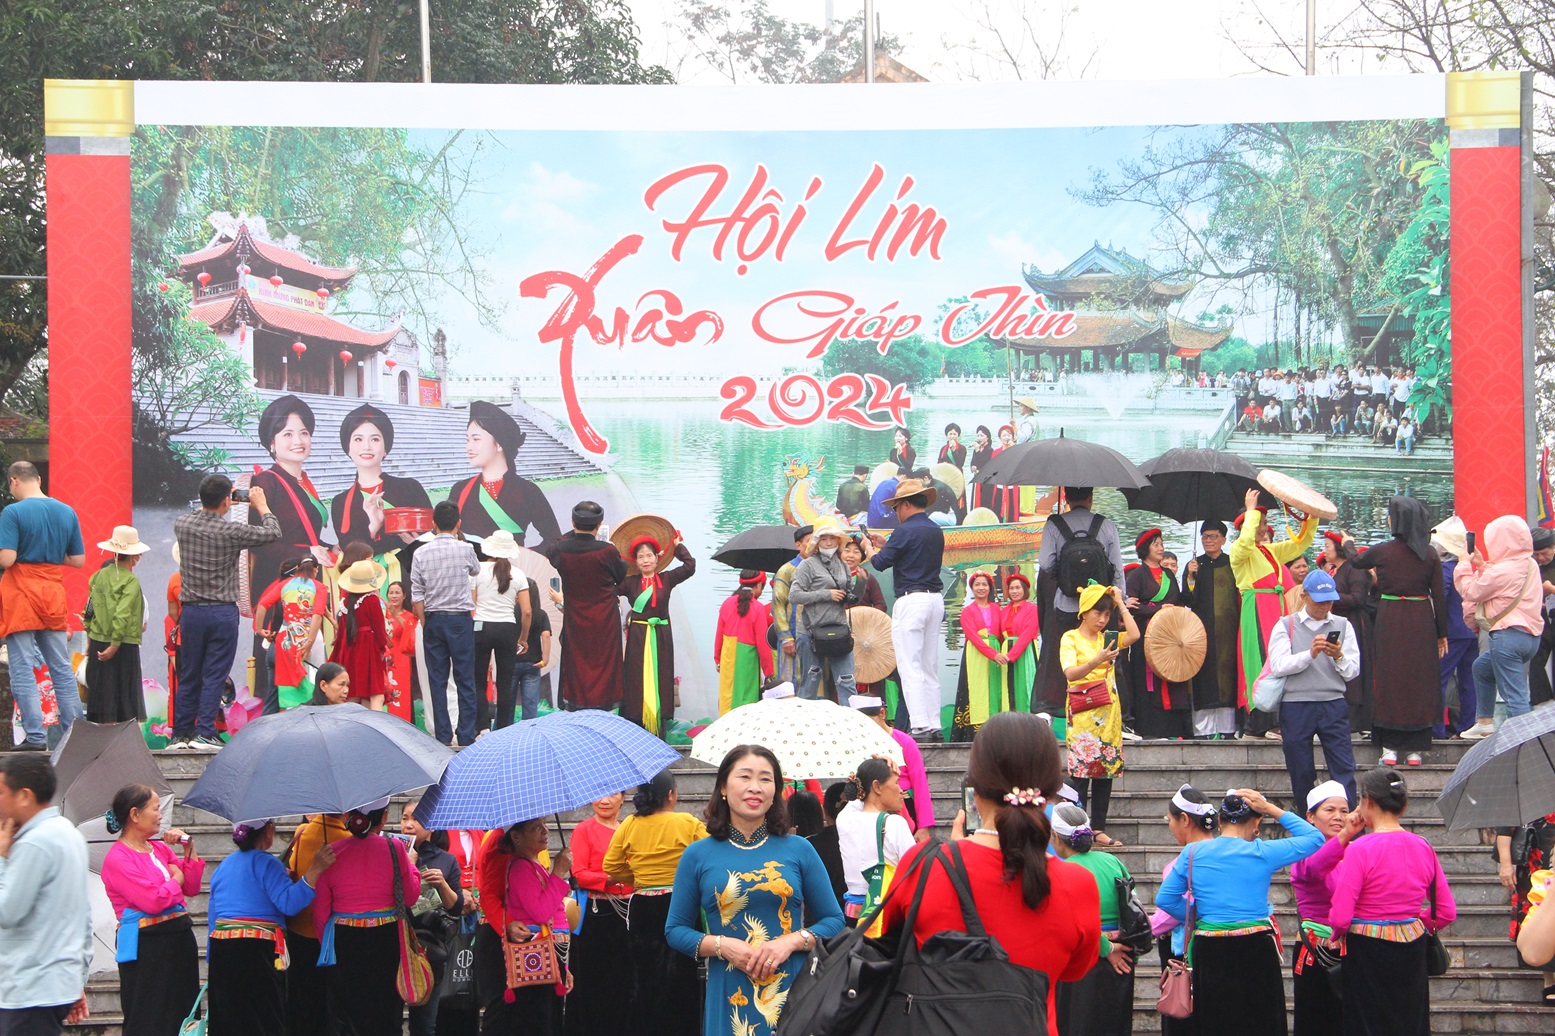 Đông đảo nhân dân và du khách thập phương trảy hội Lim